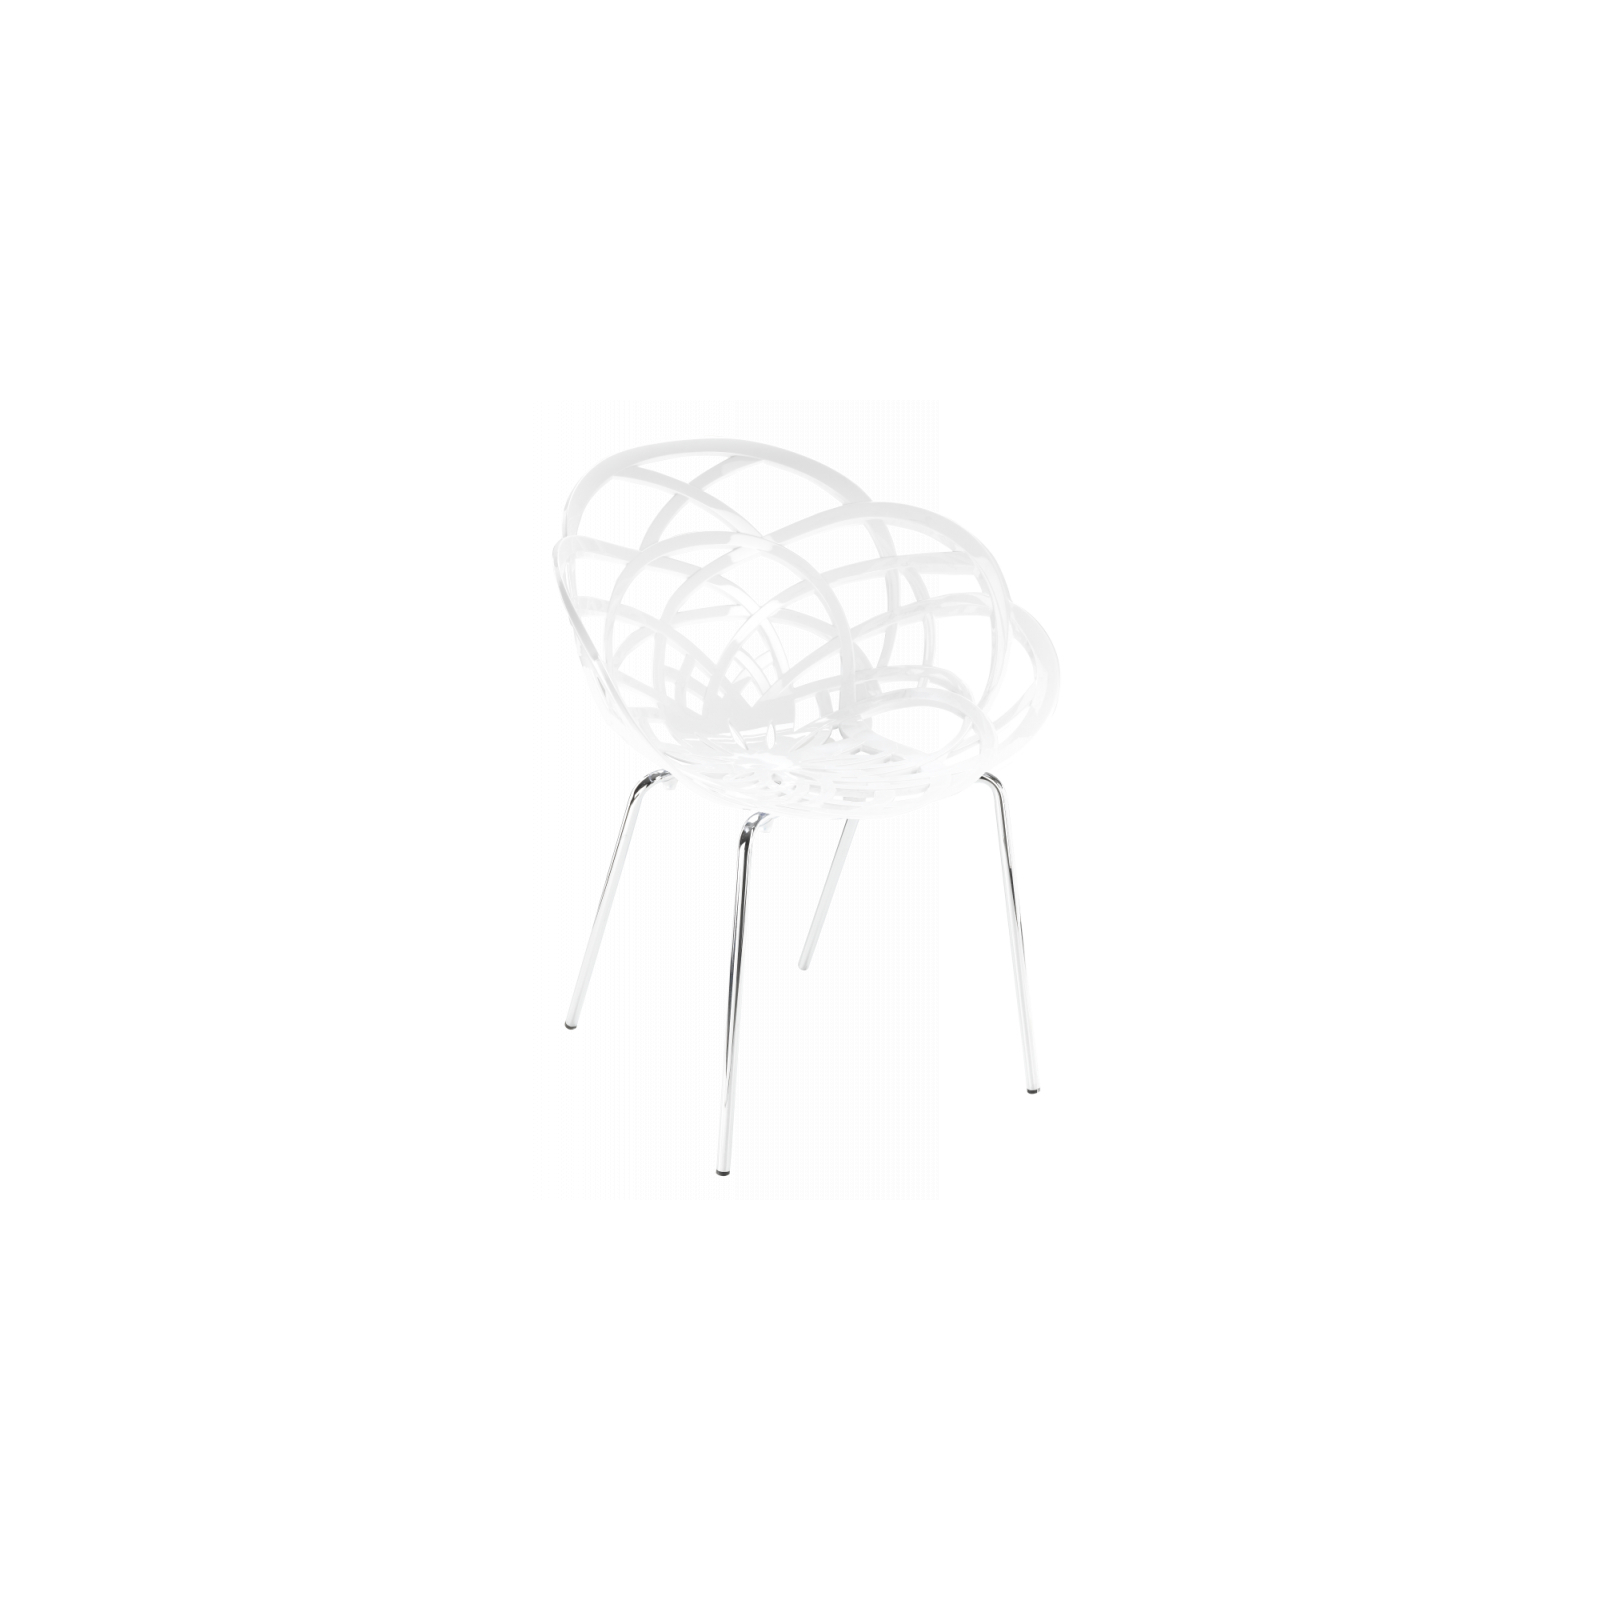 Кухонный стул PAPATYA FLORA-ML, сидение матовый красный кирпич, цвет 51c, ножки хр (2954)